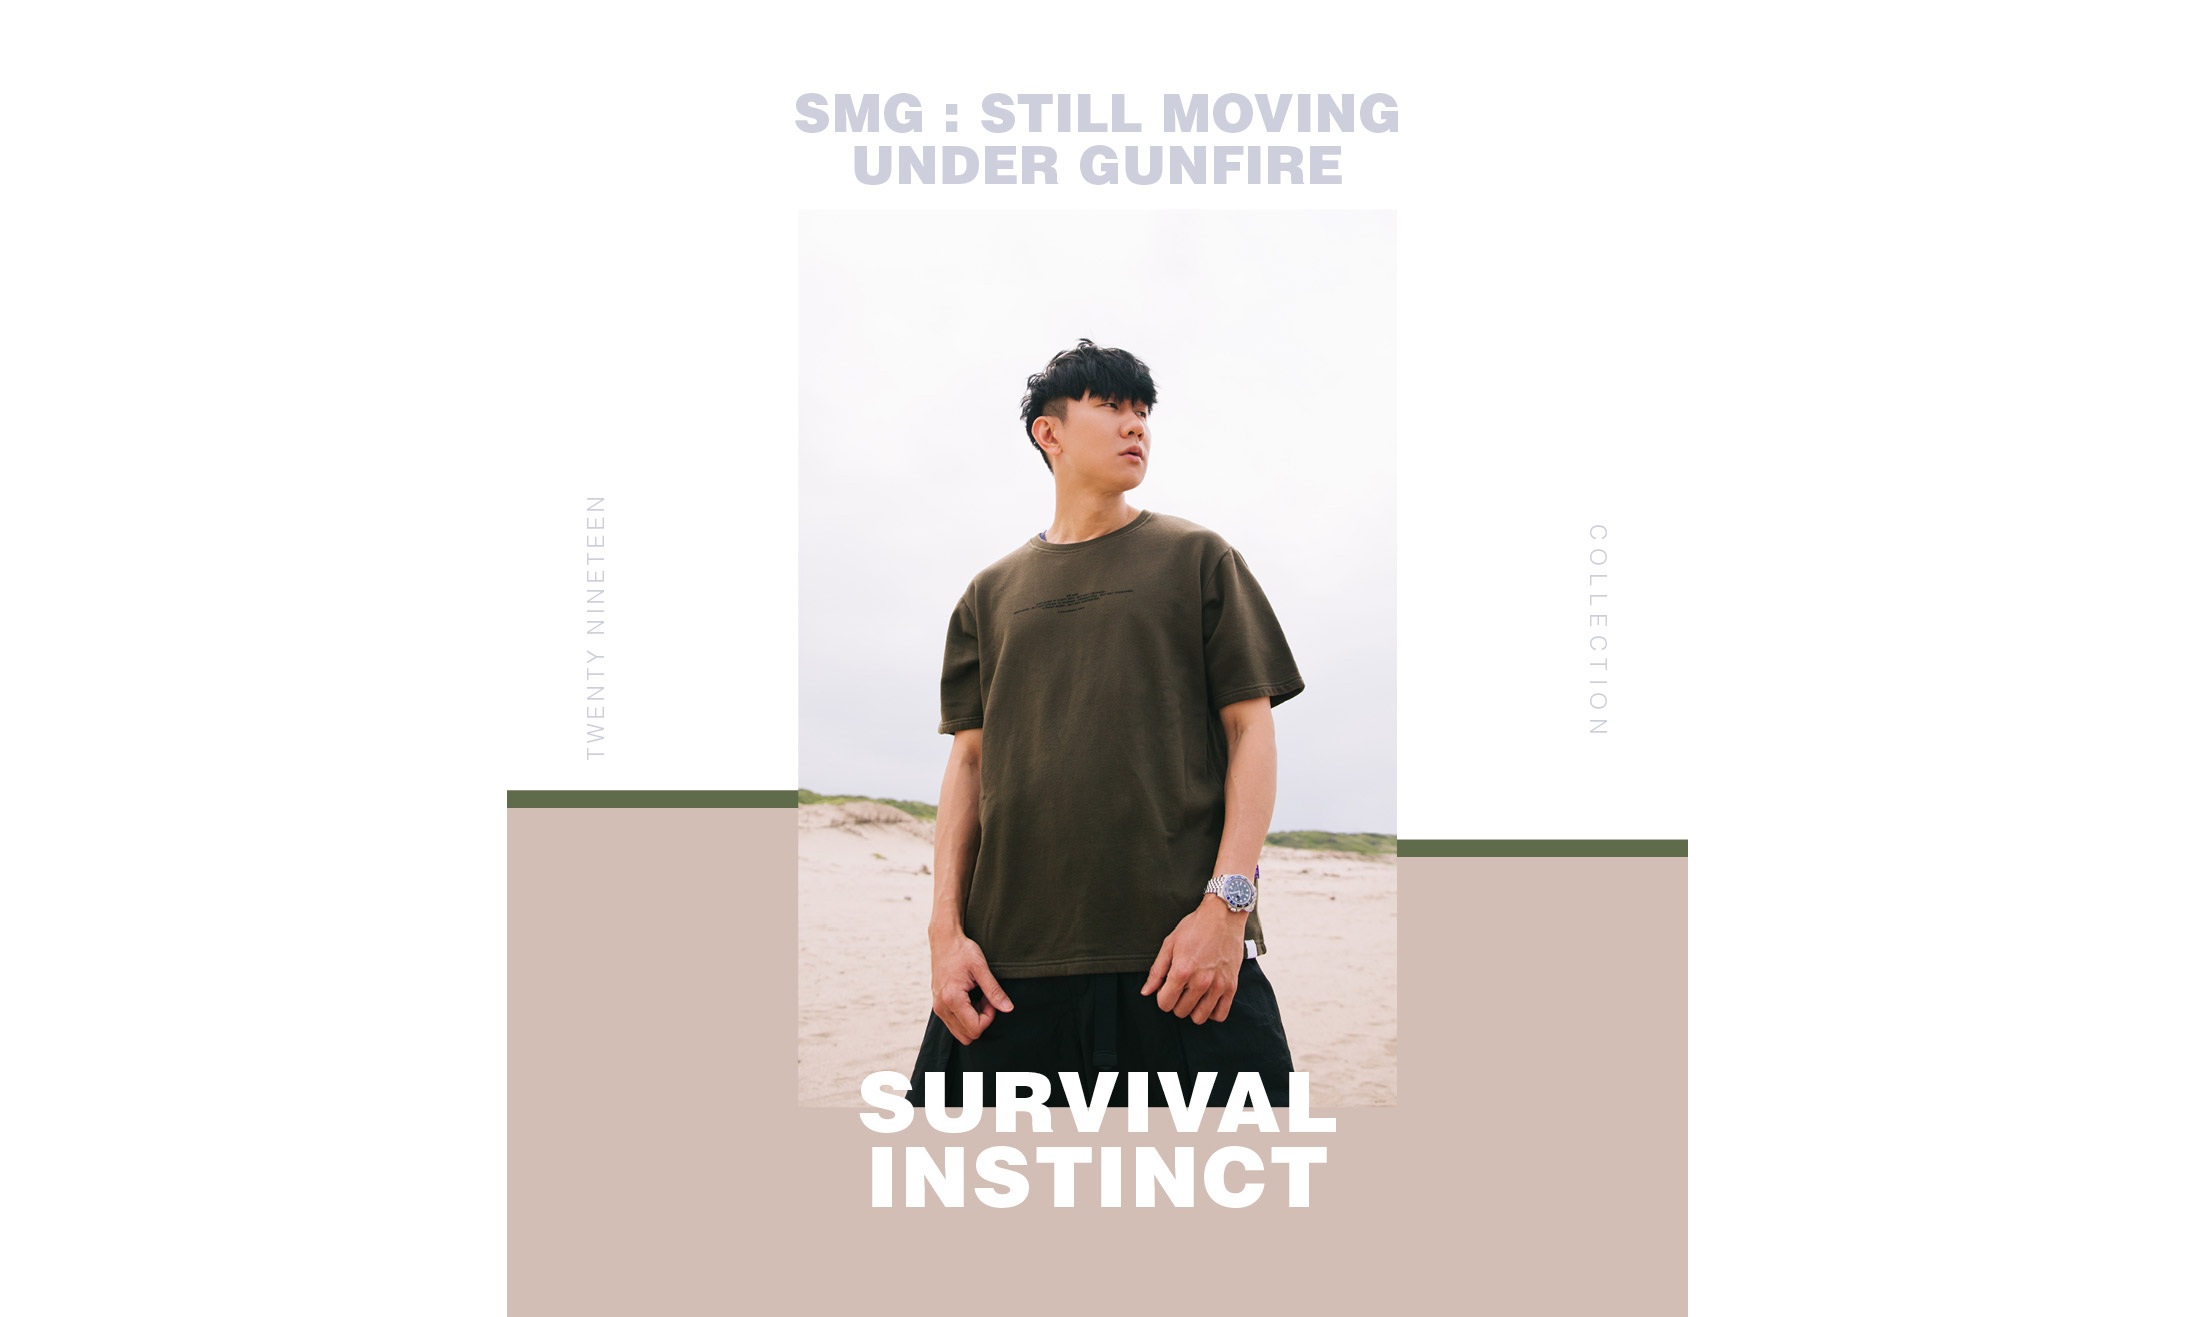 林俊杰示范，SMG 2019 春夏 “SURVIVAL INSTINCT” 系列造型特辑释出